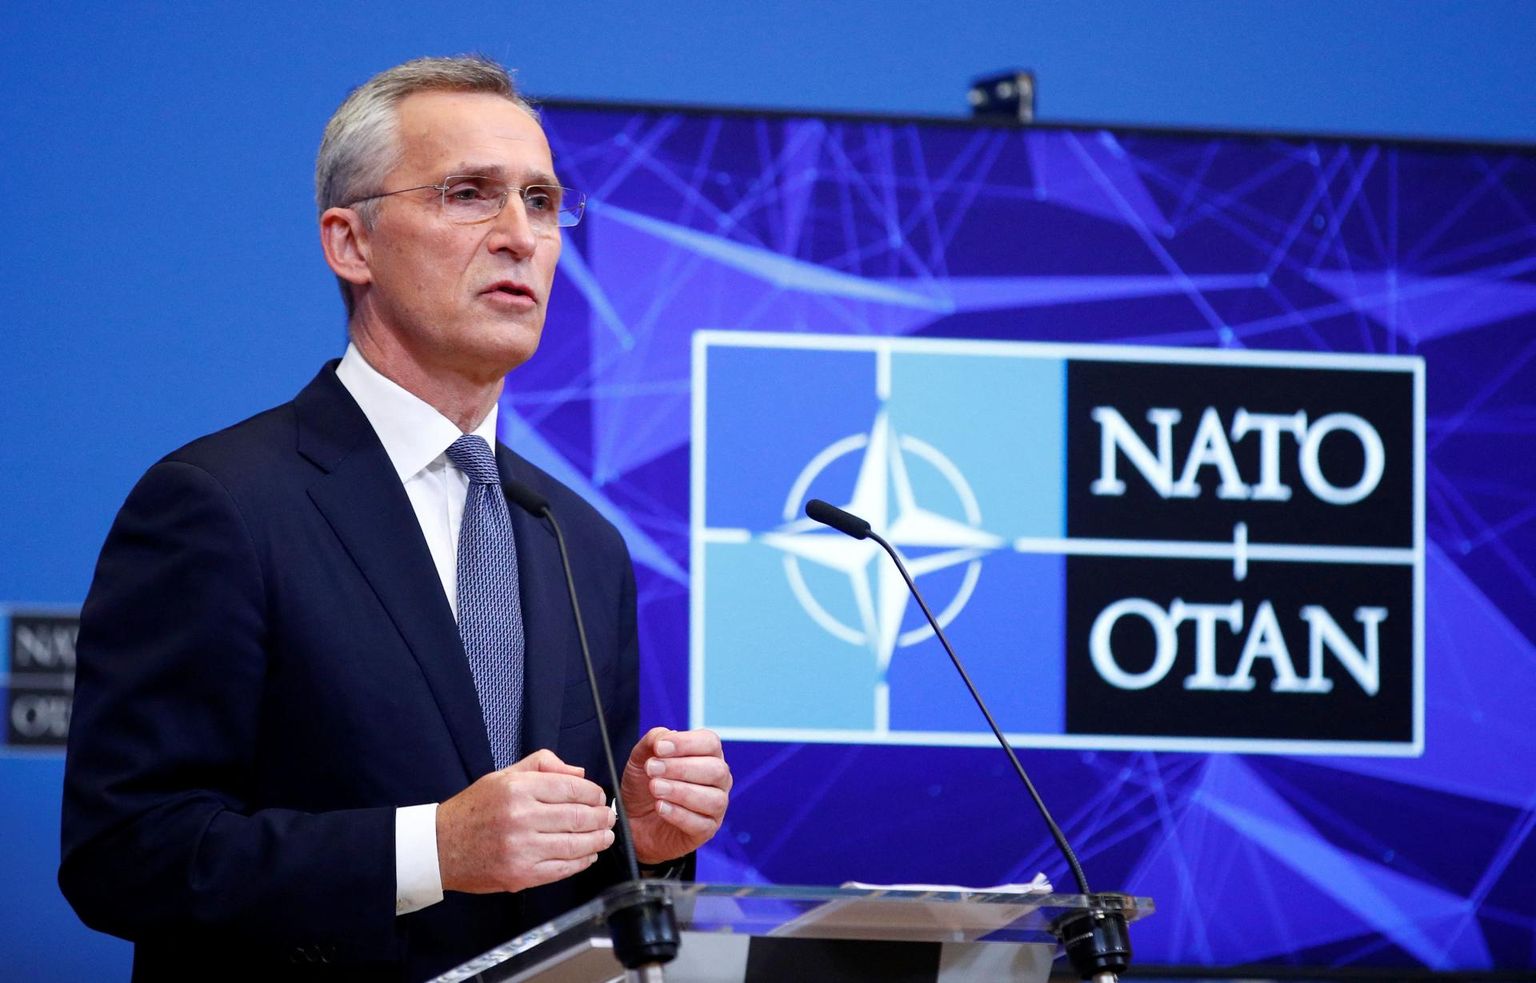 NATO pole nõus naasma mõjusfääridega maailma, kus suured riigid said väikeste saatust määrata. «Eesti teab sellise maailma tagajärgi ju väga hästi,» ütleb alliansi peasekretär Jens Stoltenberg. 